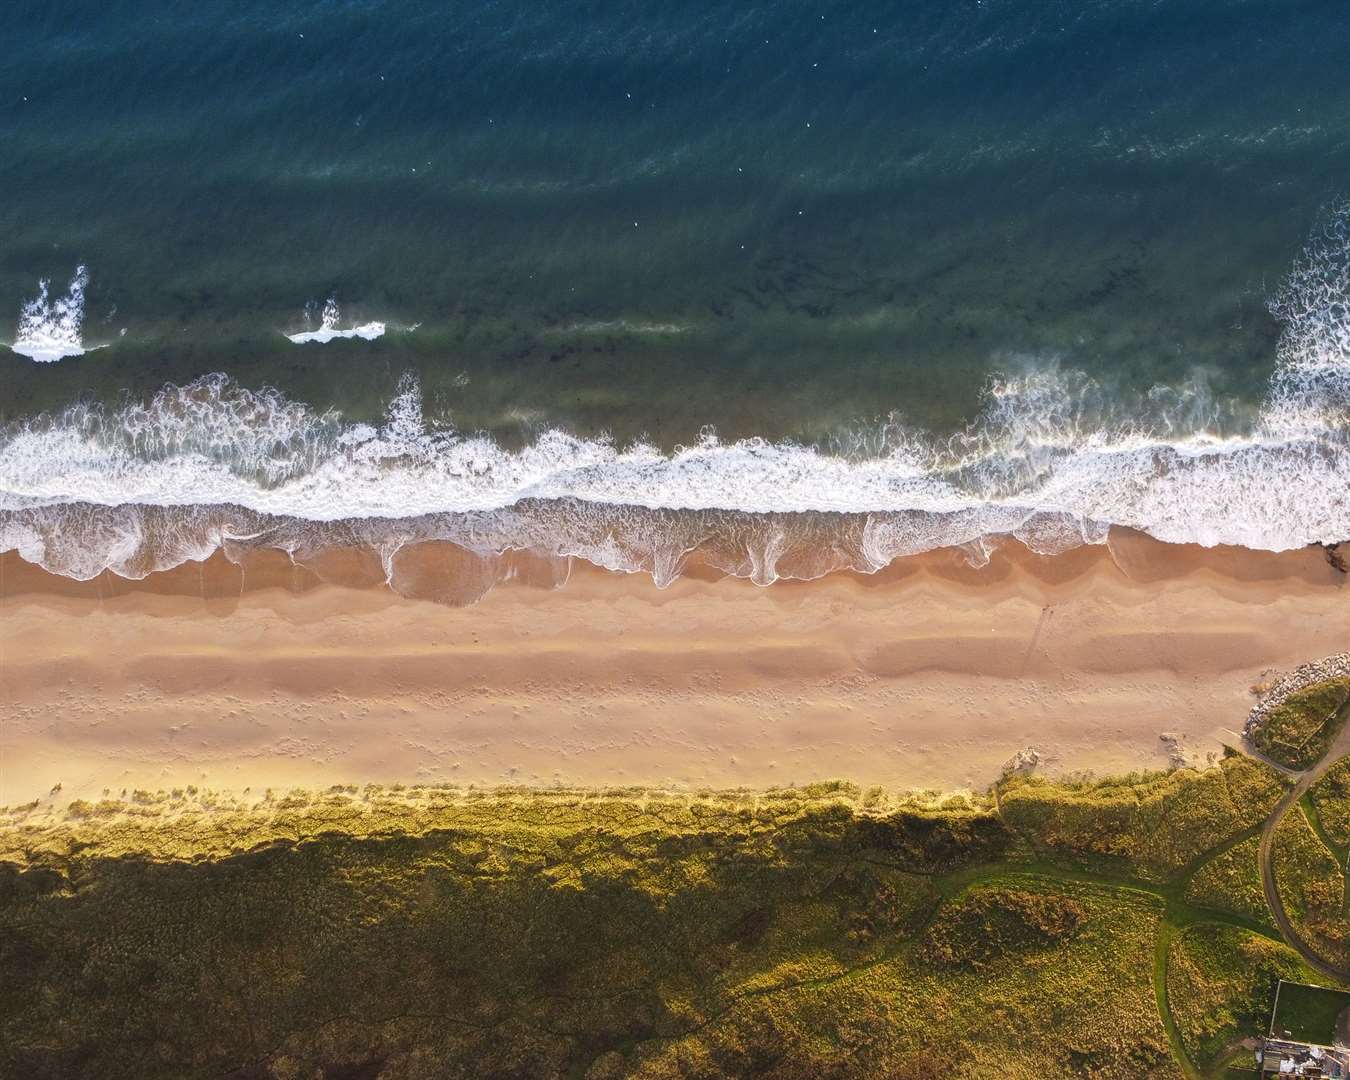 Runner-up Dean Ross’ stunning aerial image of Dornoch Beach.